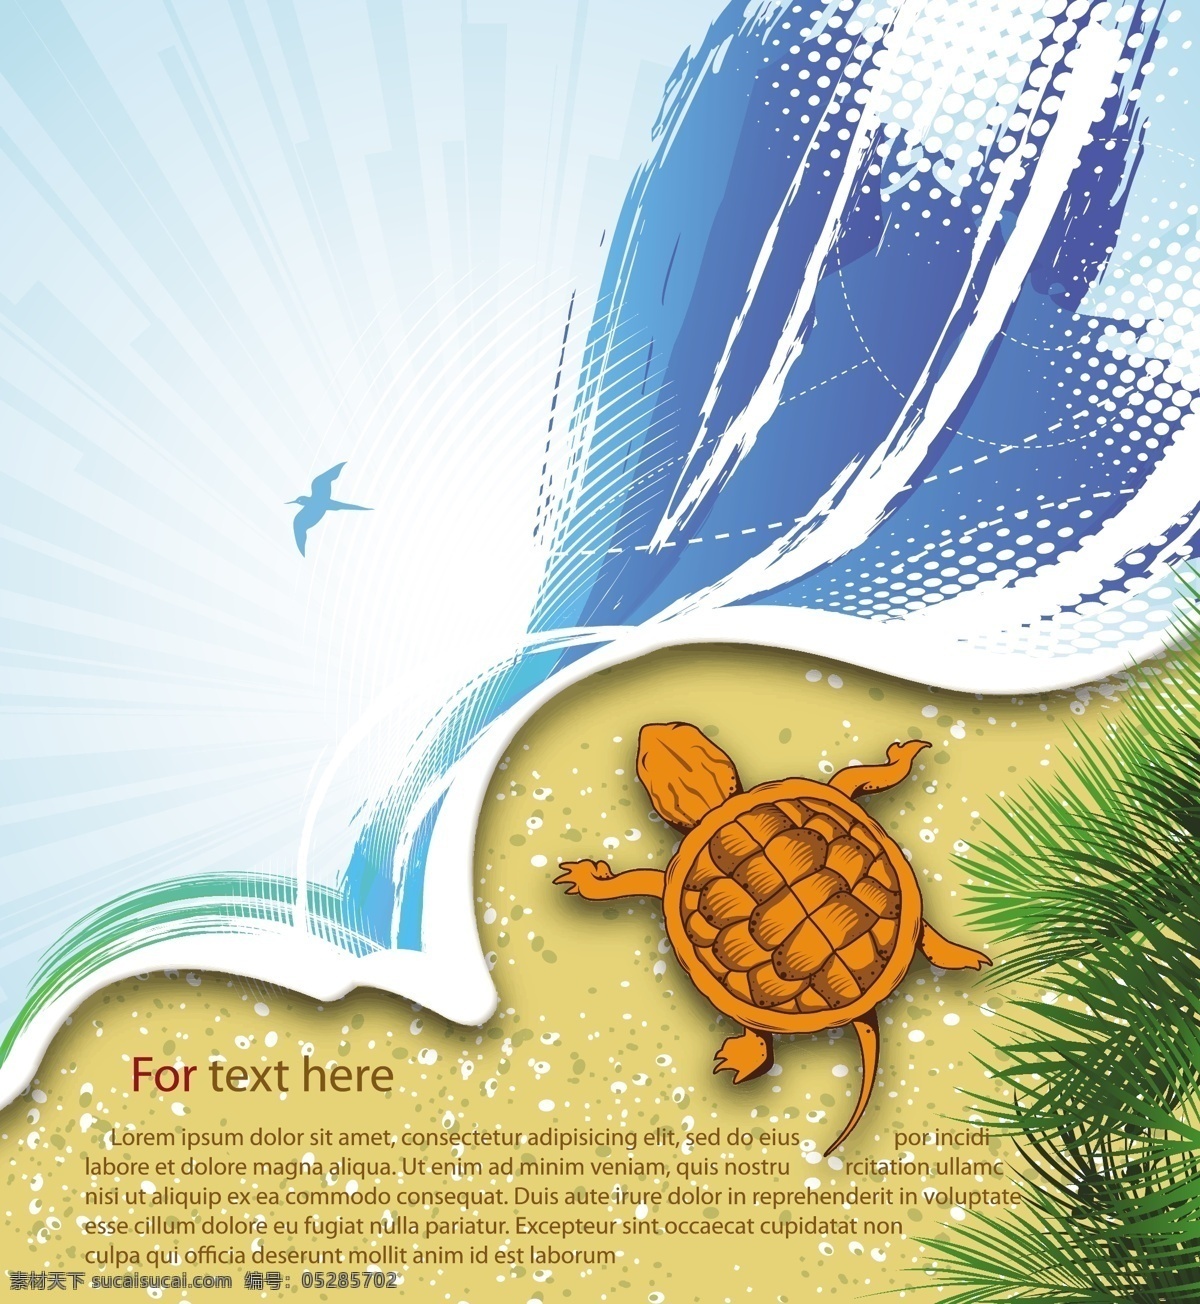 海滩 风景 海龟 矢量 模板下载 夏日海滩风景 沙滩背景 夏日主题插画 底纹边框 矢量素材 白色